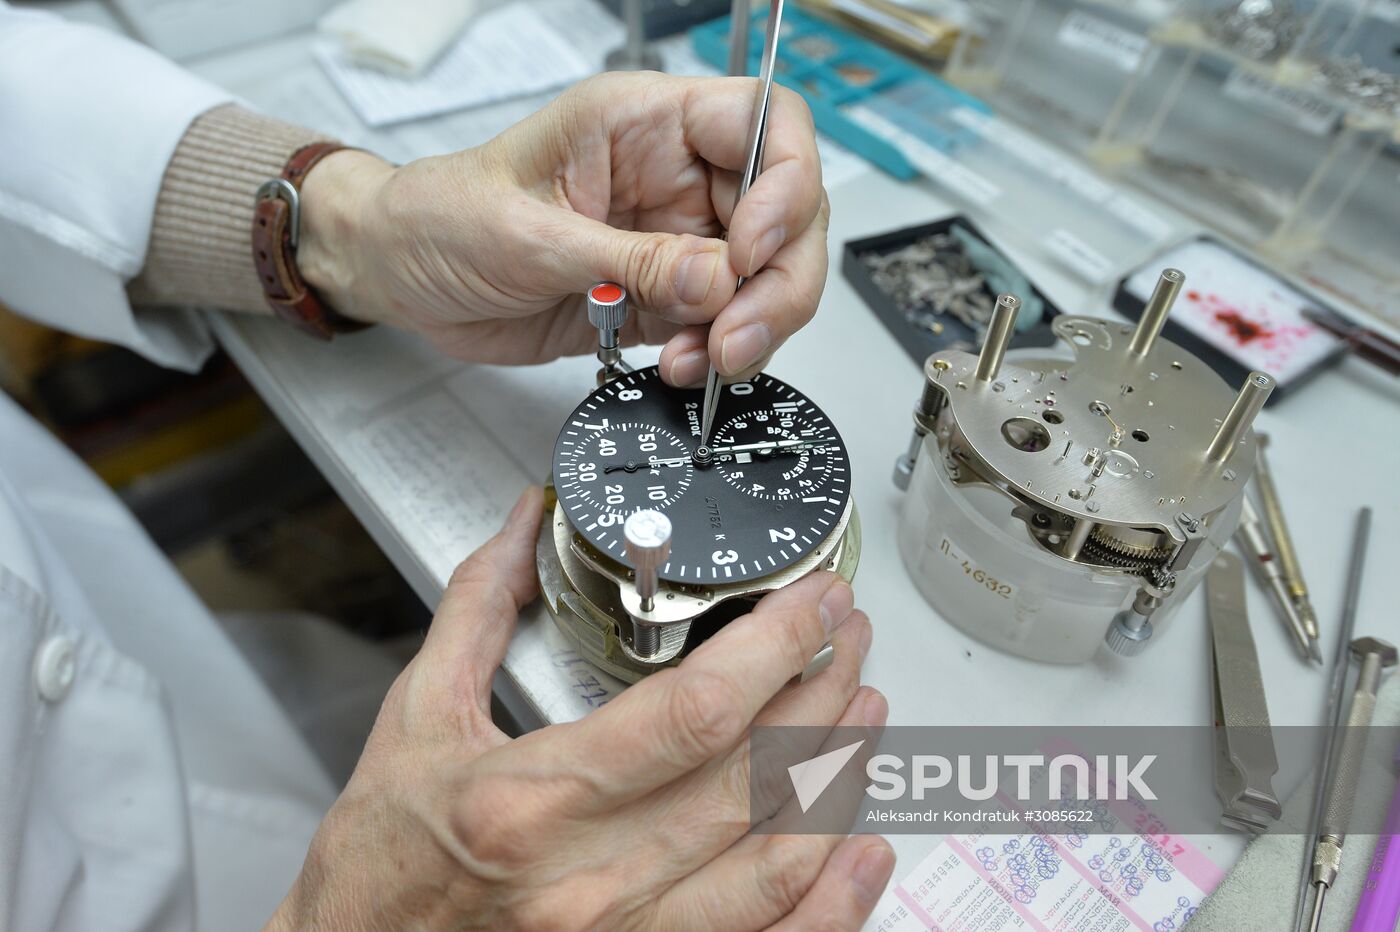 Chelyabinsk Watch Factory